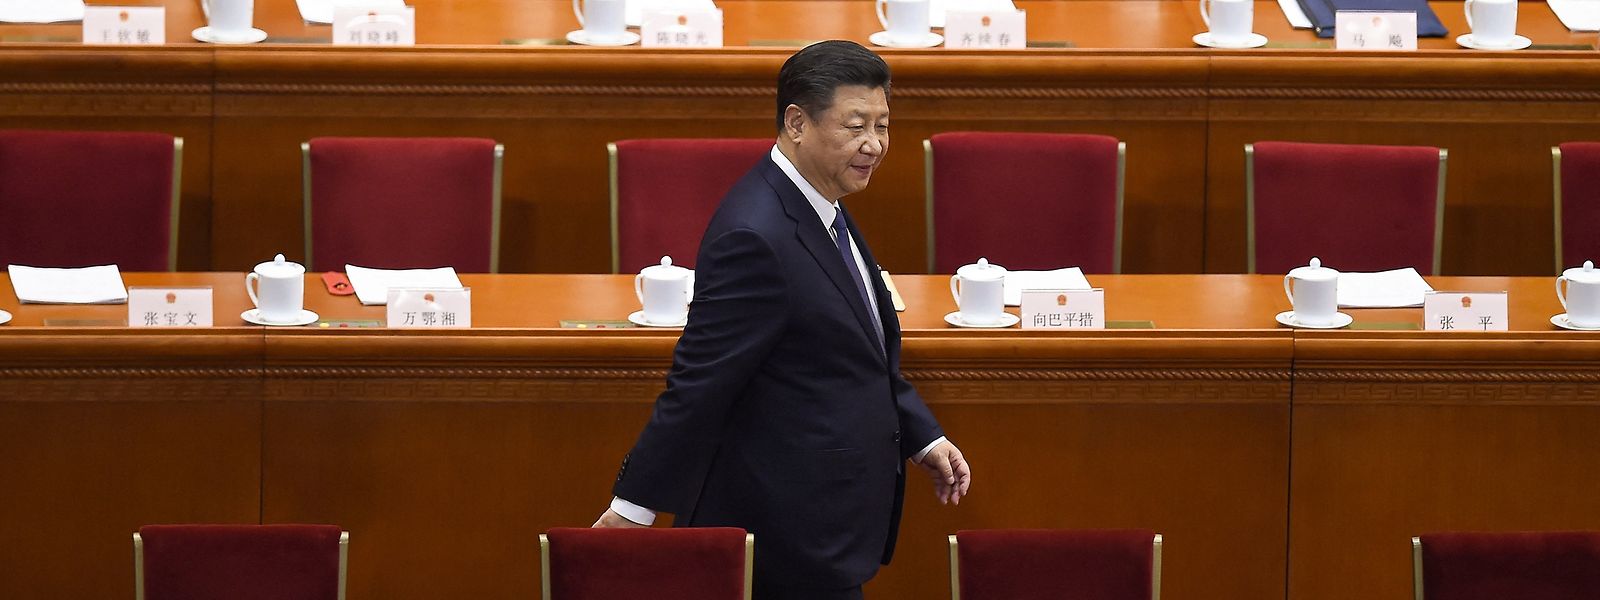 Auf seiner ersten Plenarsitzung stimmte das neue Zentralkomitee der Kommunistischen Partei für eine dritte Amtszeit von Xi Jinping als Generalsekretär und Chef der Militärkommission.